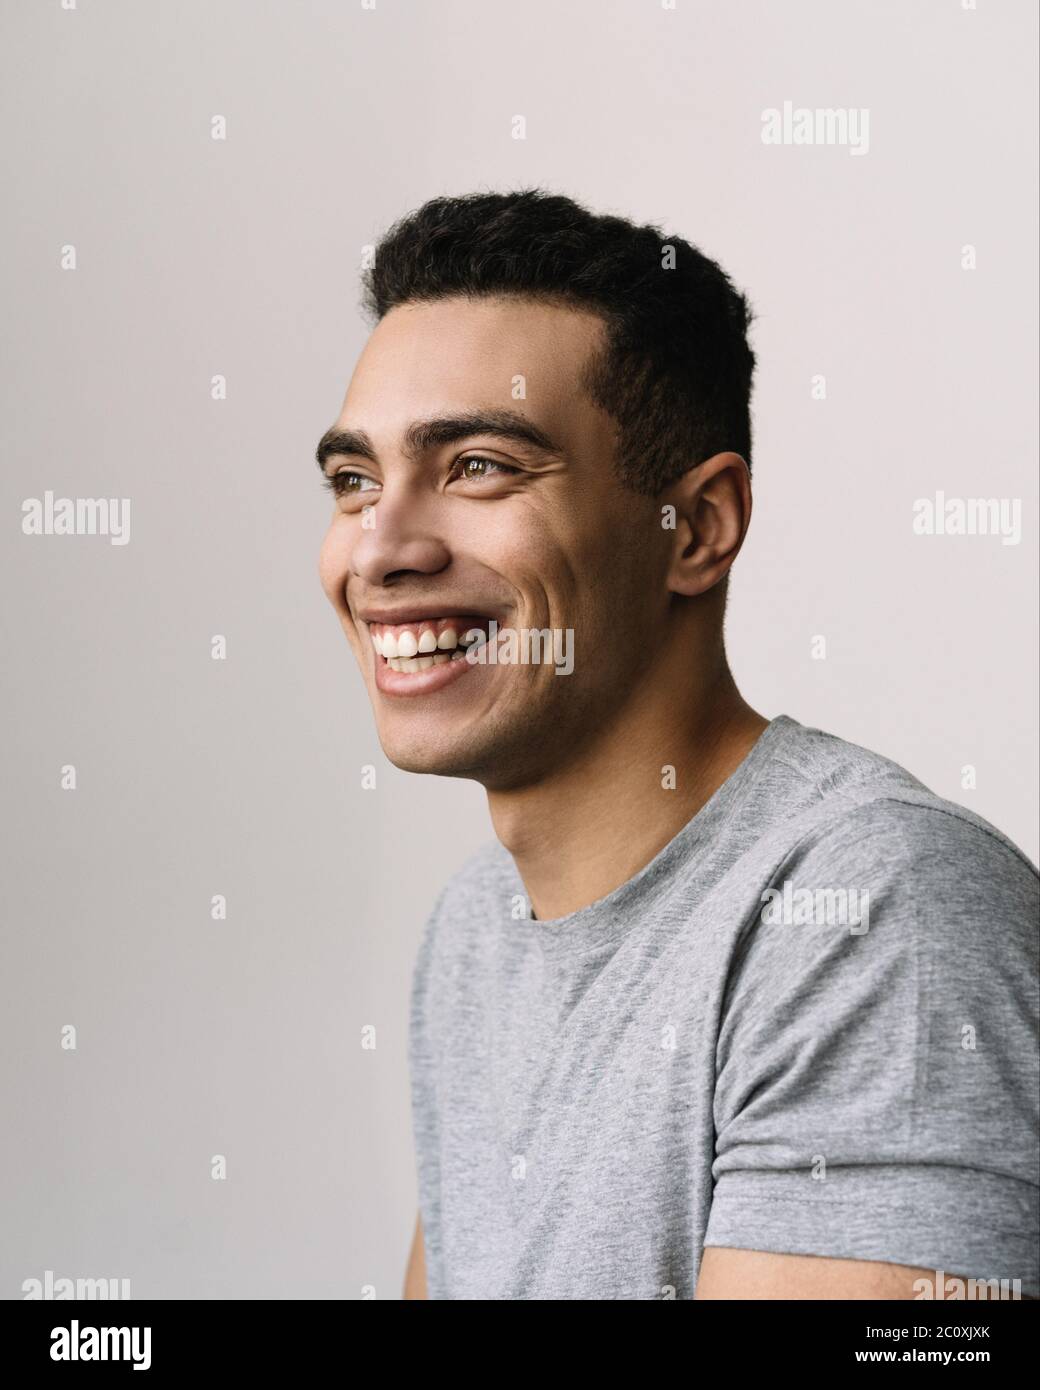 Ritratto di bell'uomo afroamericano sorridente con felice volto emozionale, con t-shirt casual grigia. Modello di moda positivo che posa per le immagini Foto Stock